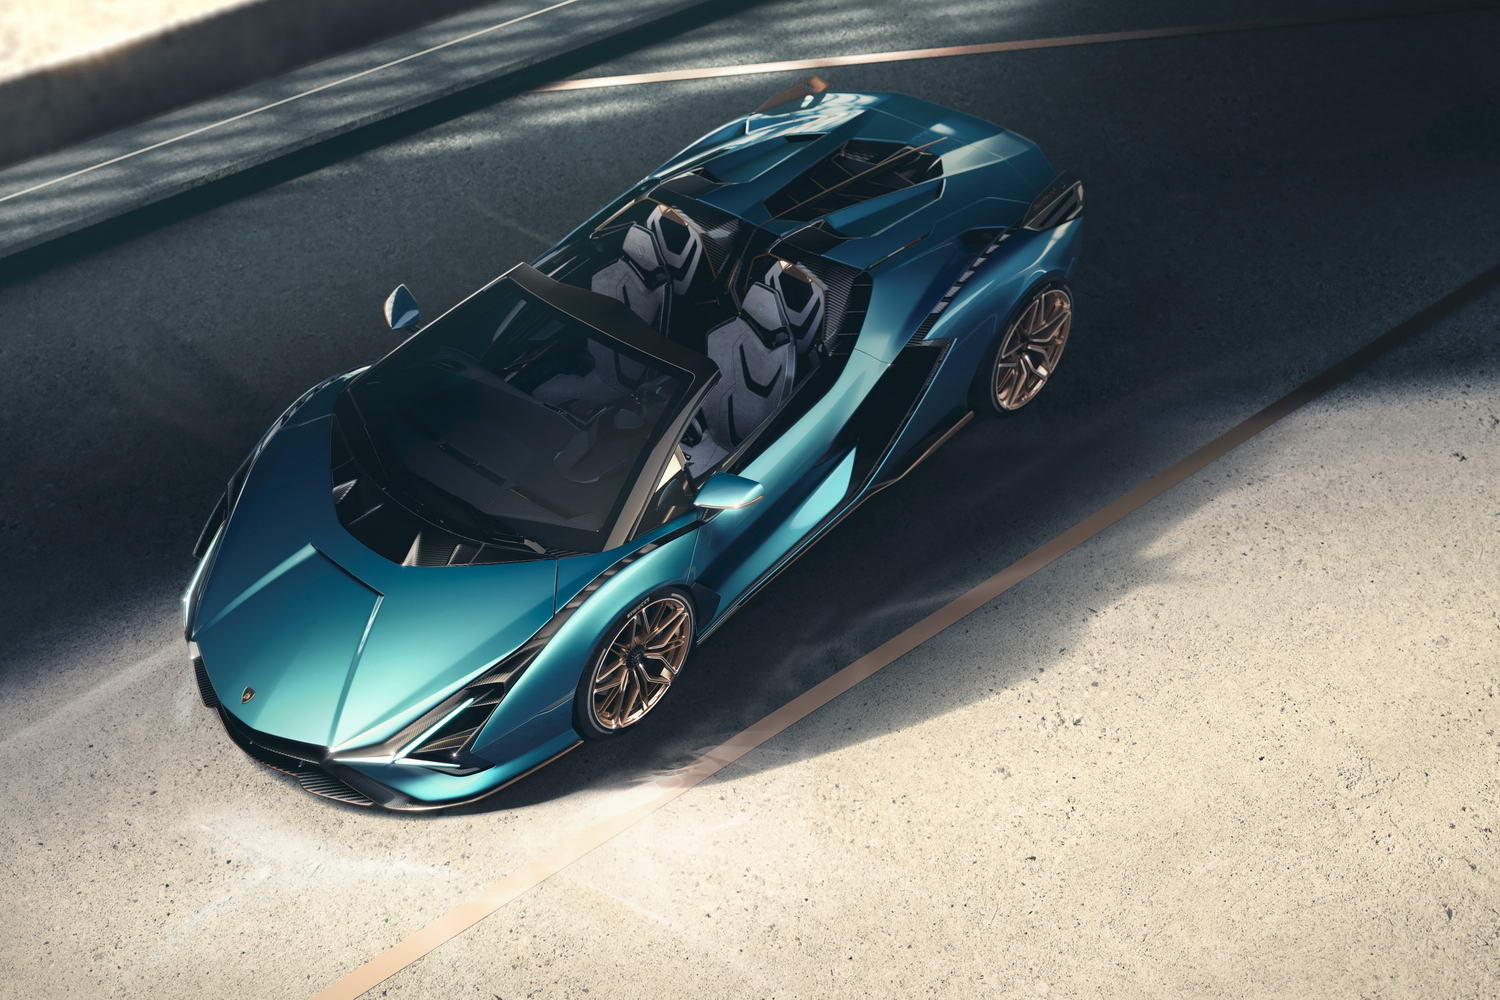 Lamborghini Sian hybrid convertible revealed